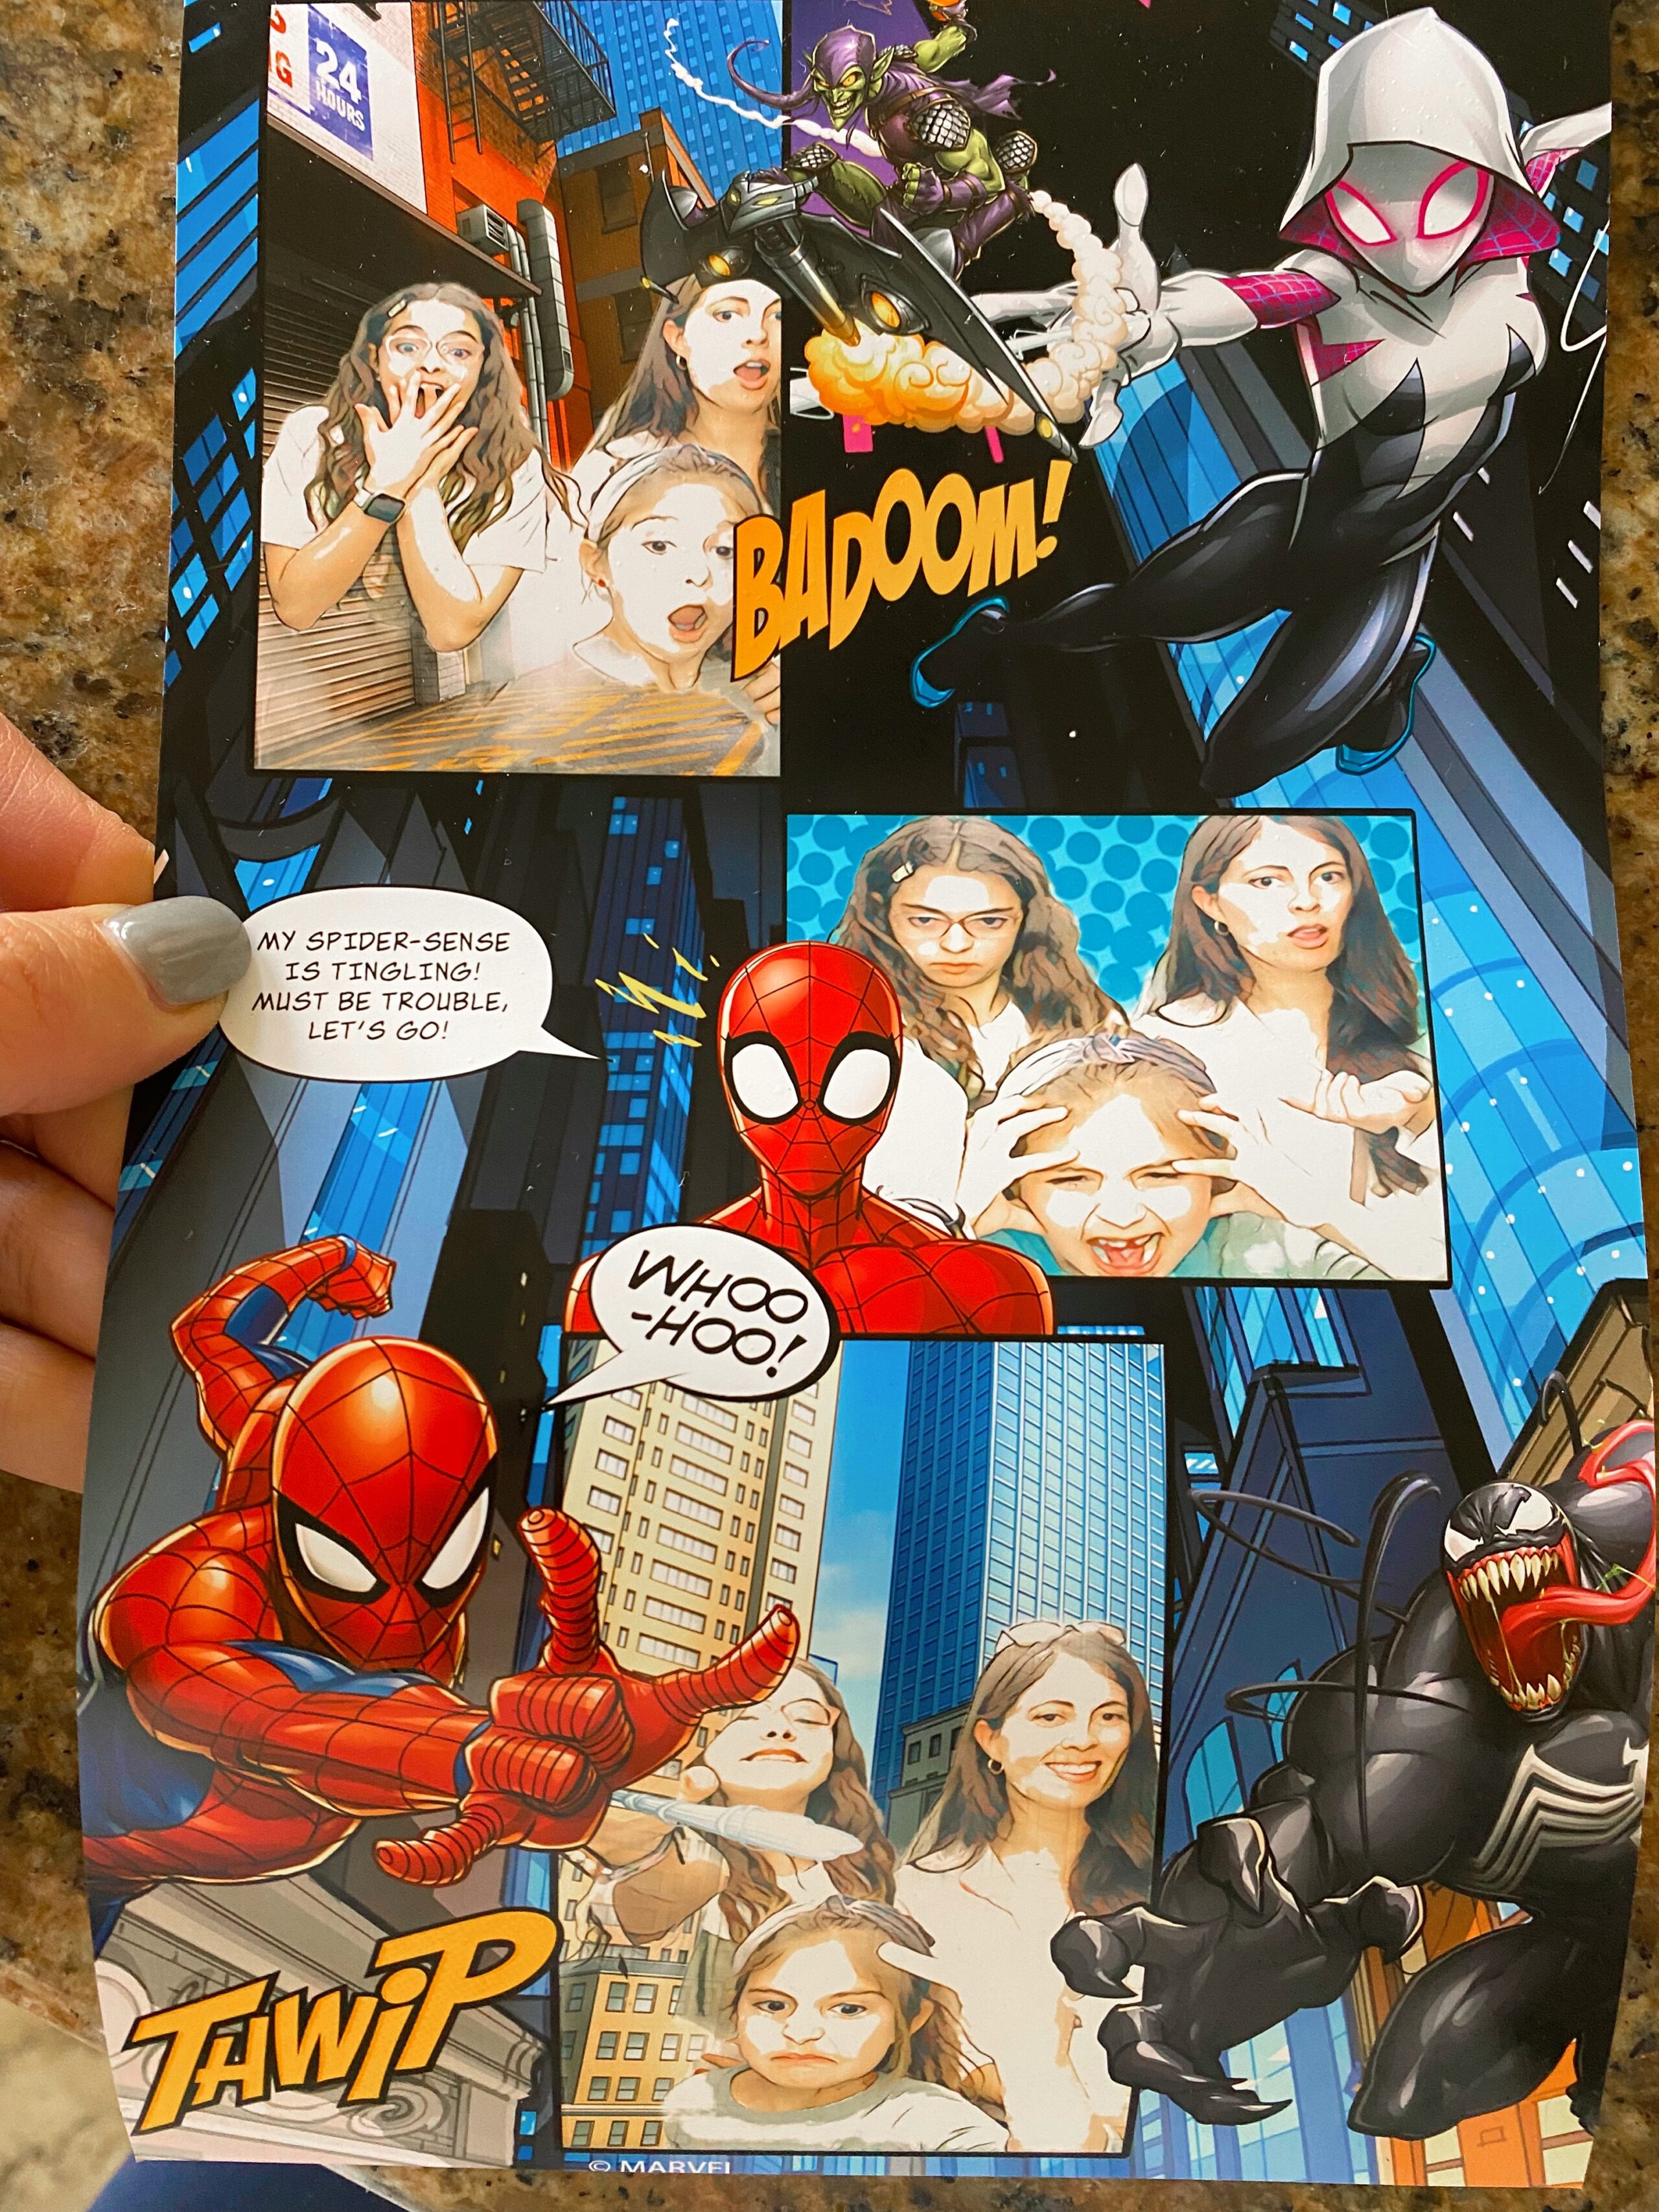 Spider man photobooth